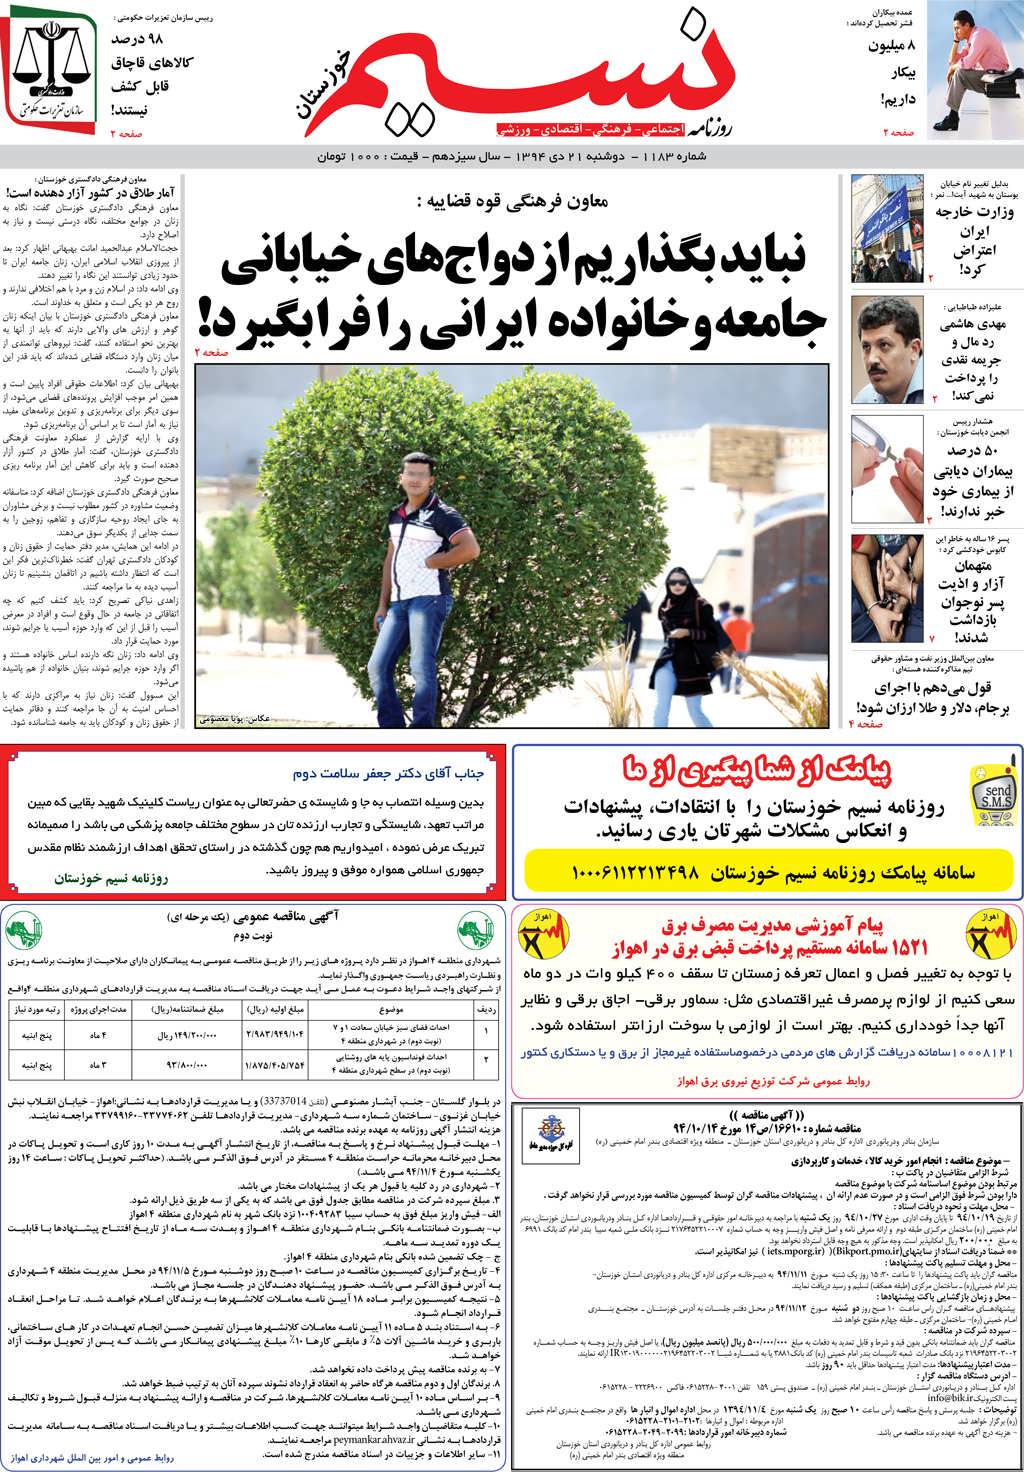 صفحه اصلی روزنامه نسیم شماره 1183